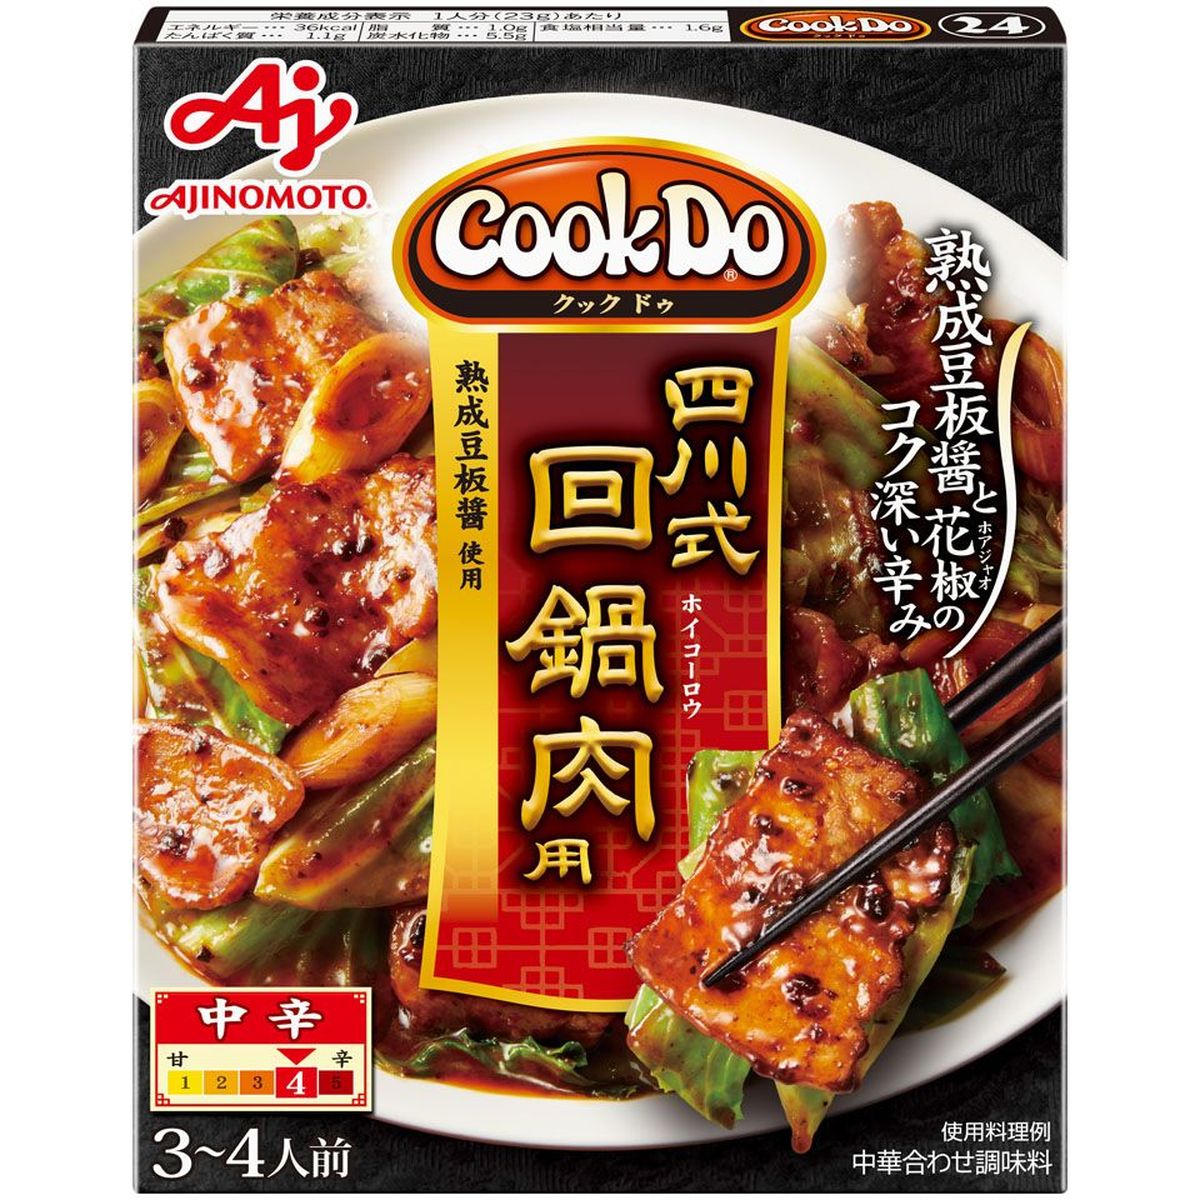 ̑fAGF ̑f CookDo l쎮p 80g x 10